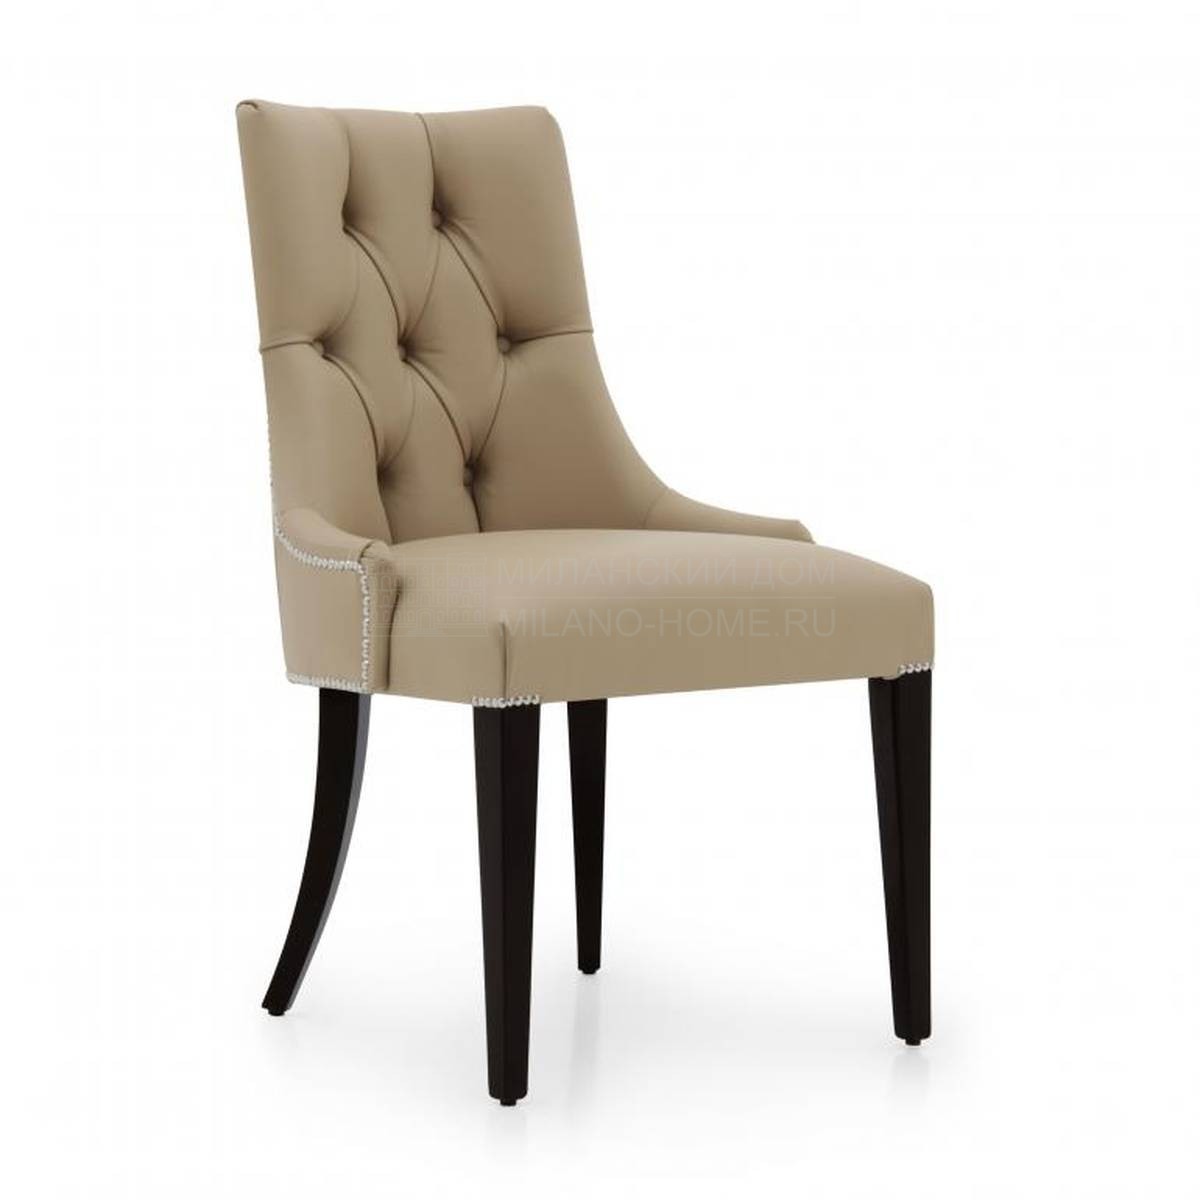 Кожаный стул Olimpia leather из Италии фабрики SEVEN SEDIE